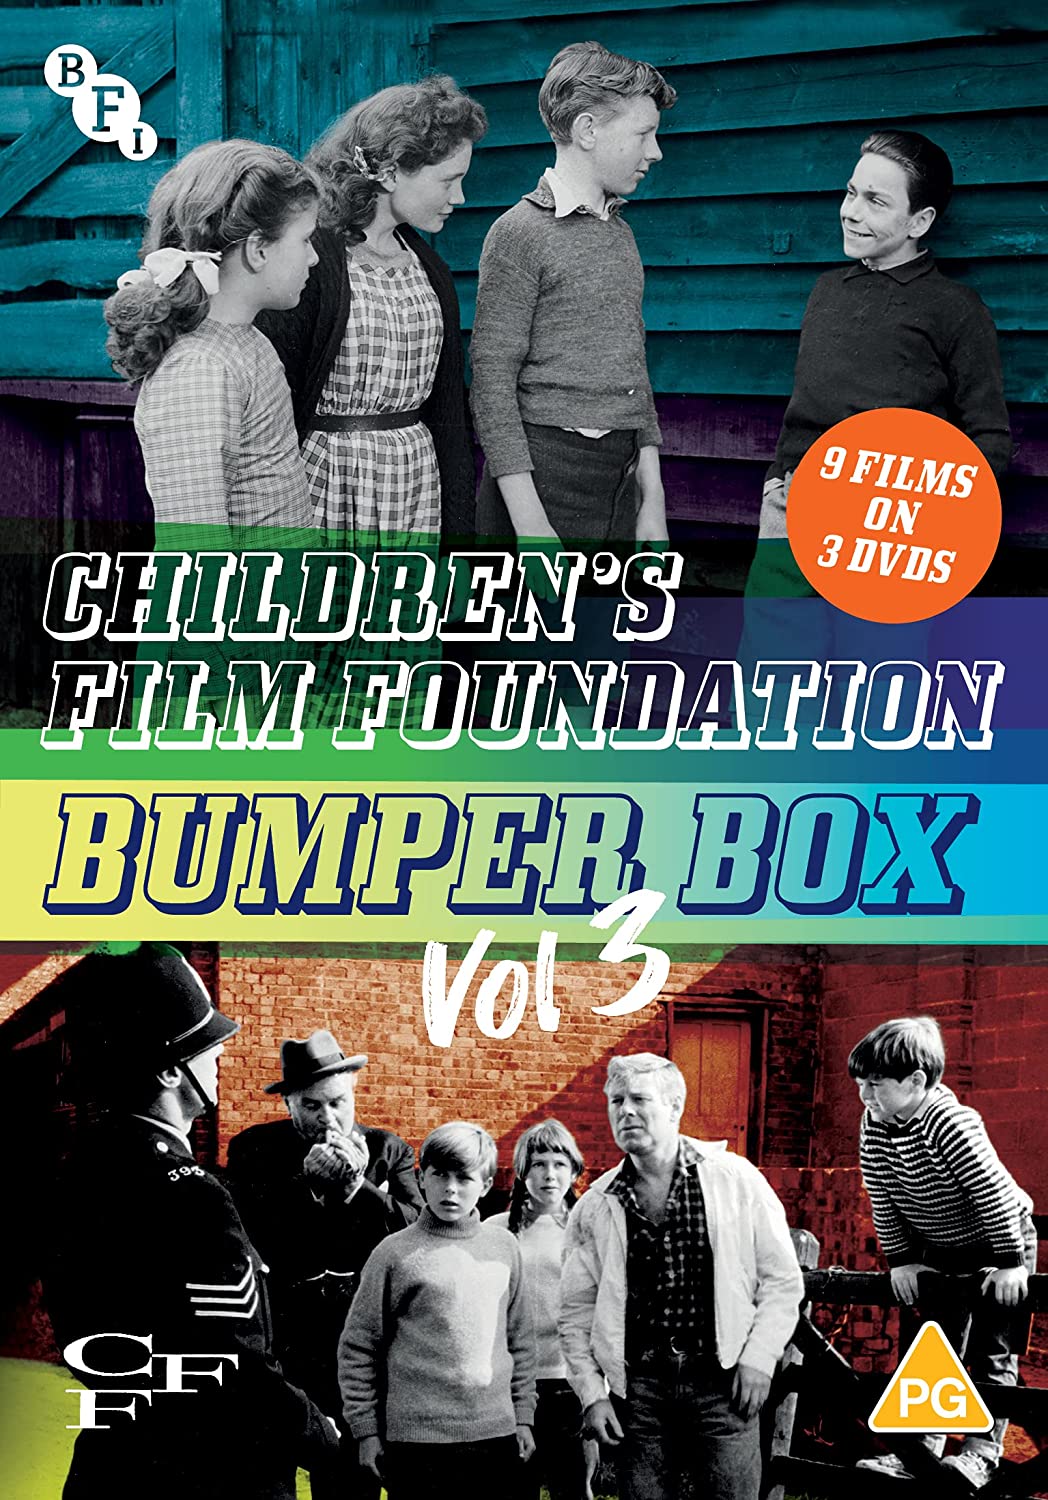 Bumper Box Vol.3 der Children's Film Foundation [DVD]